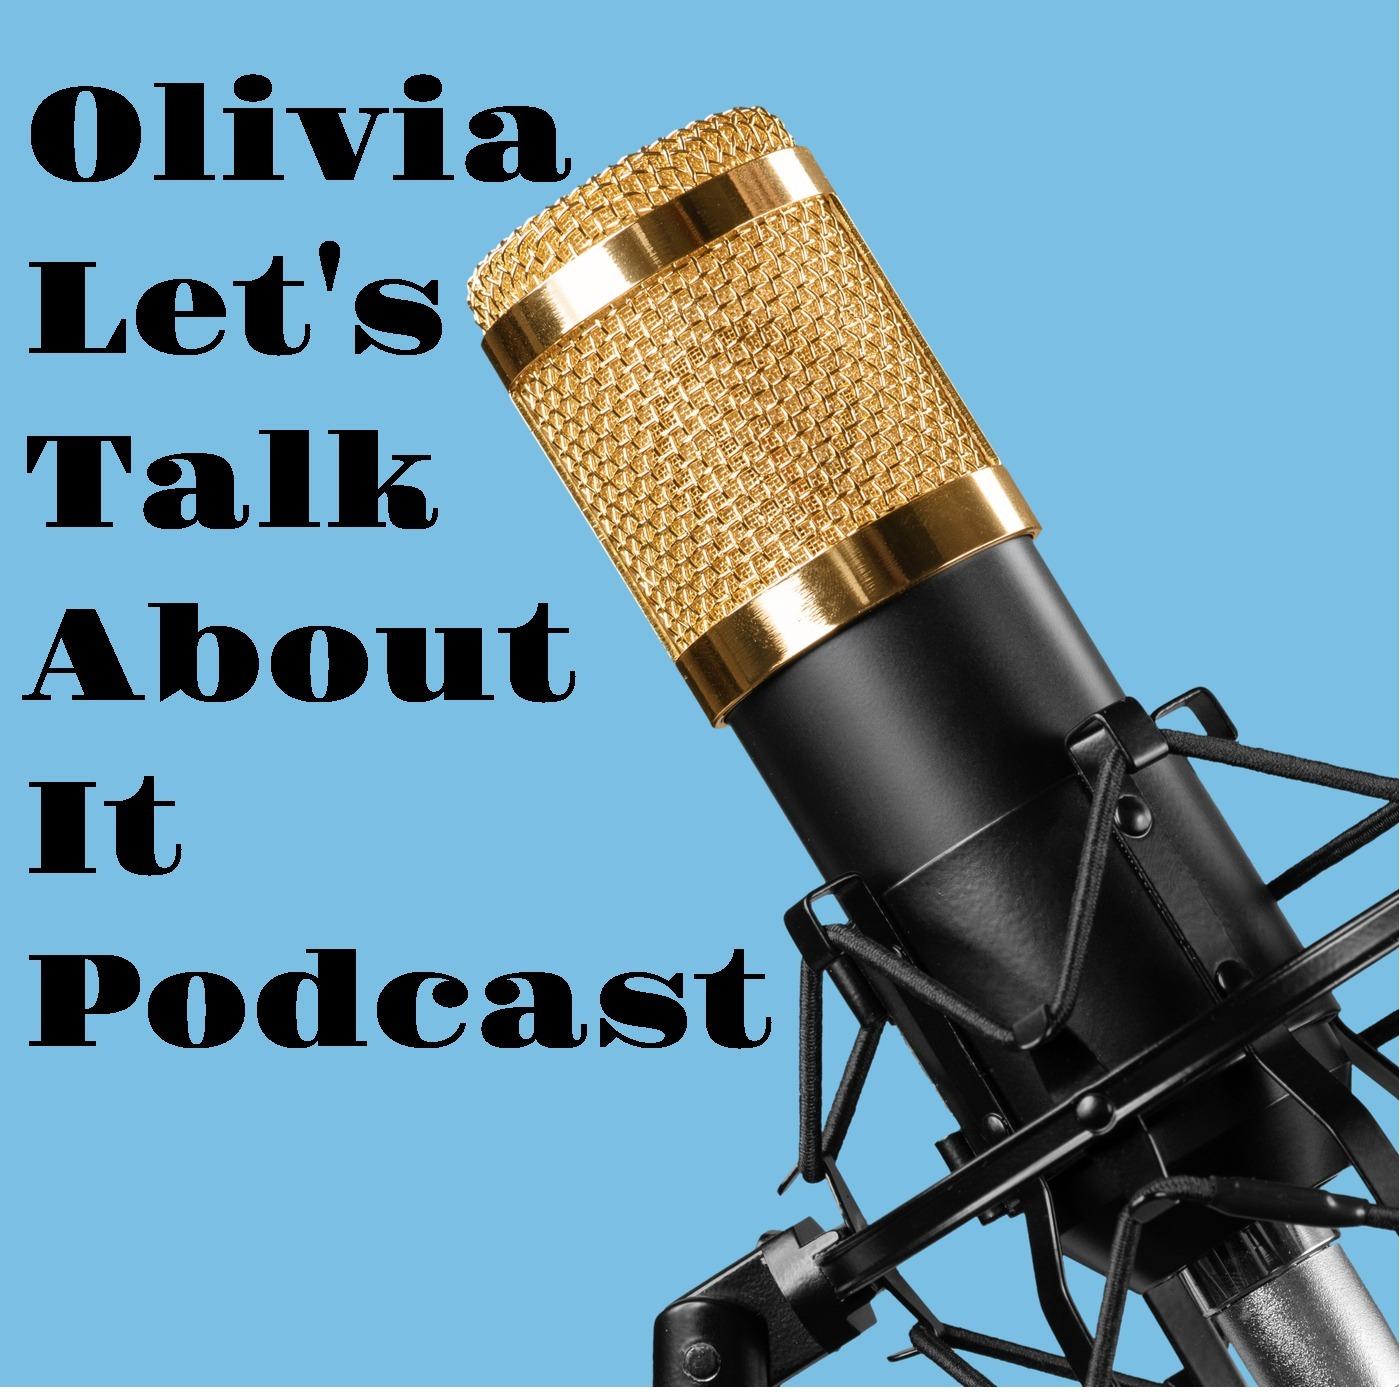 Olivia's Podcast